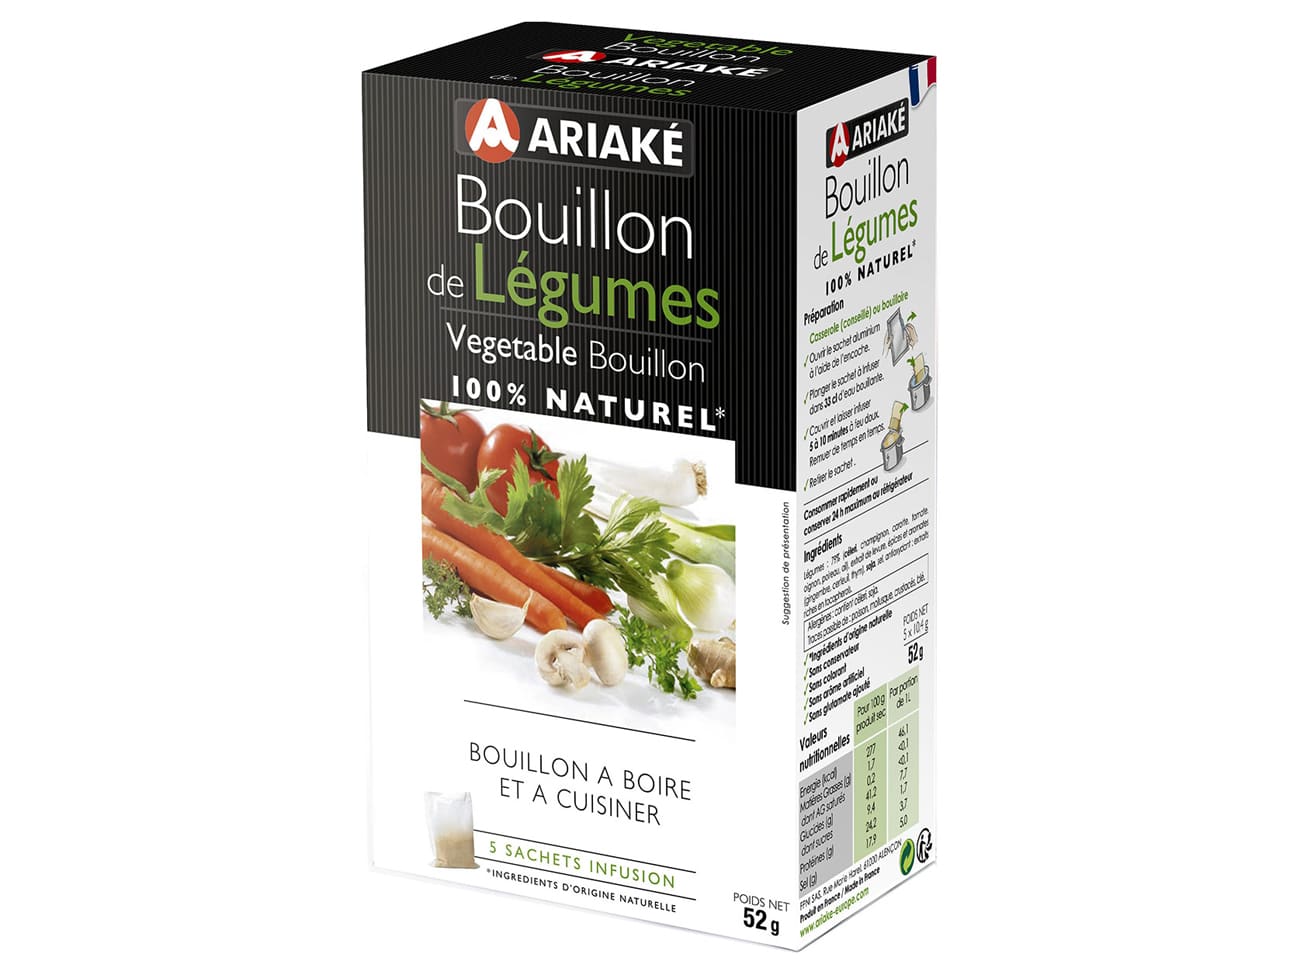 ARIAKE, Bouillon de Boeuf, 5 sachets 33cl - Achat, utilisation